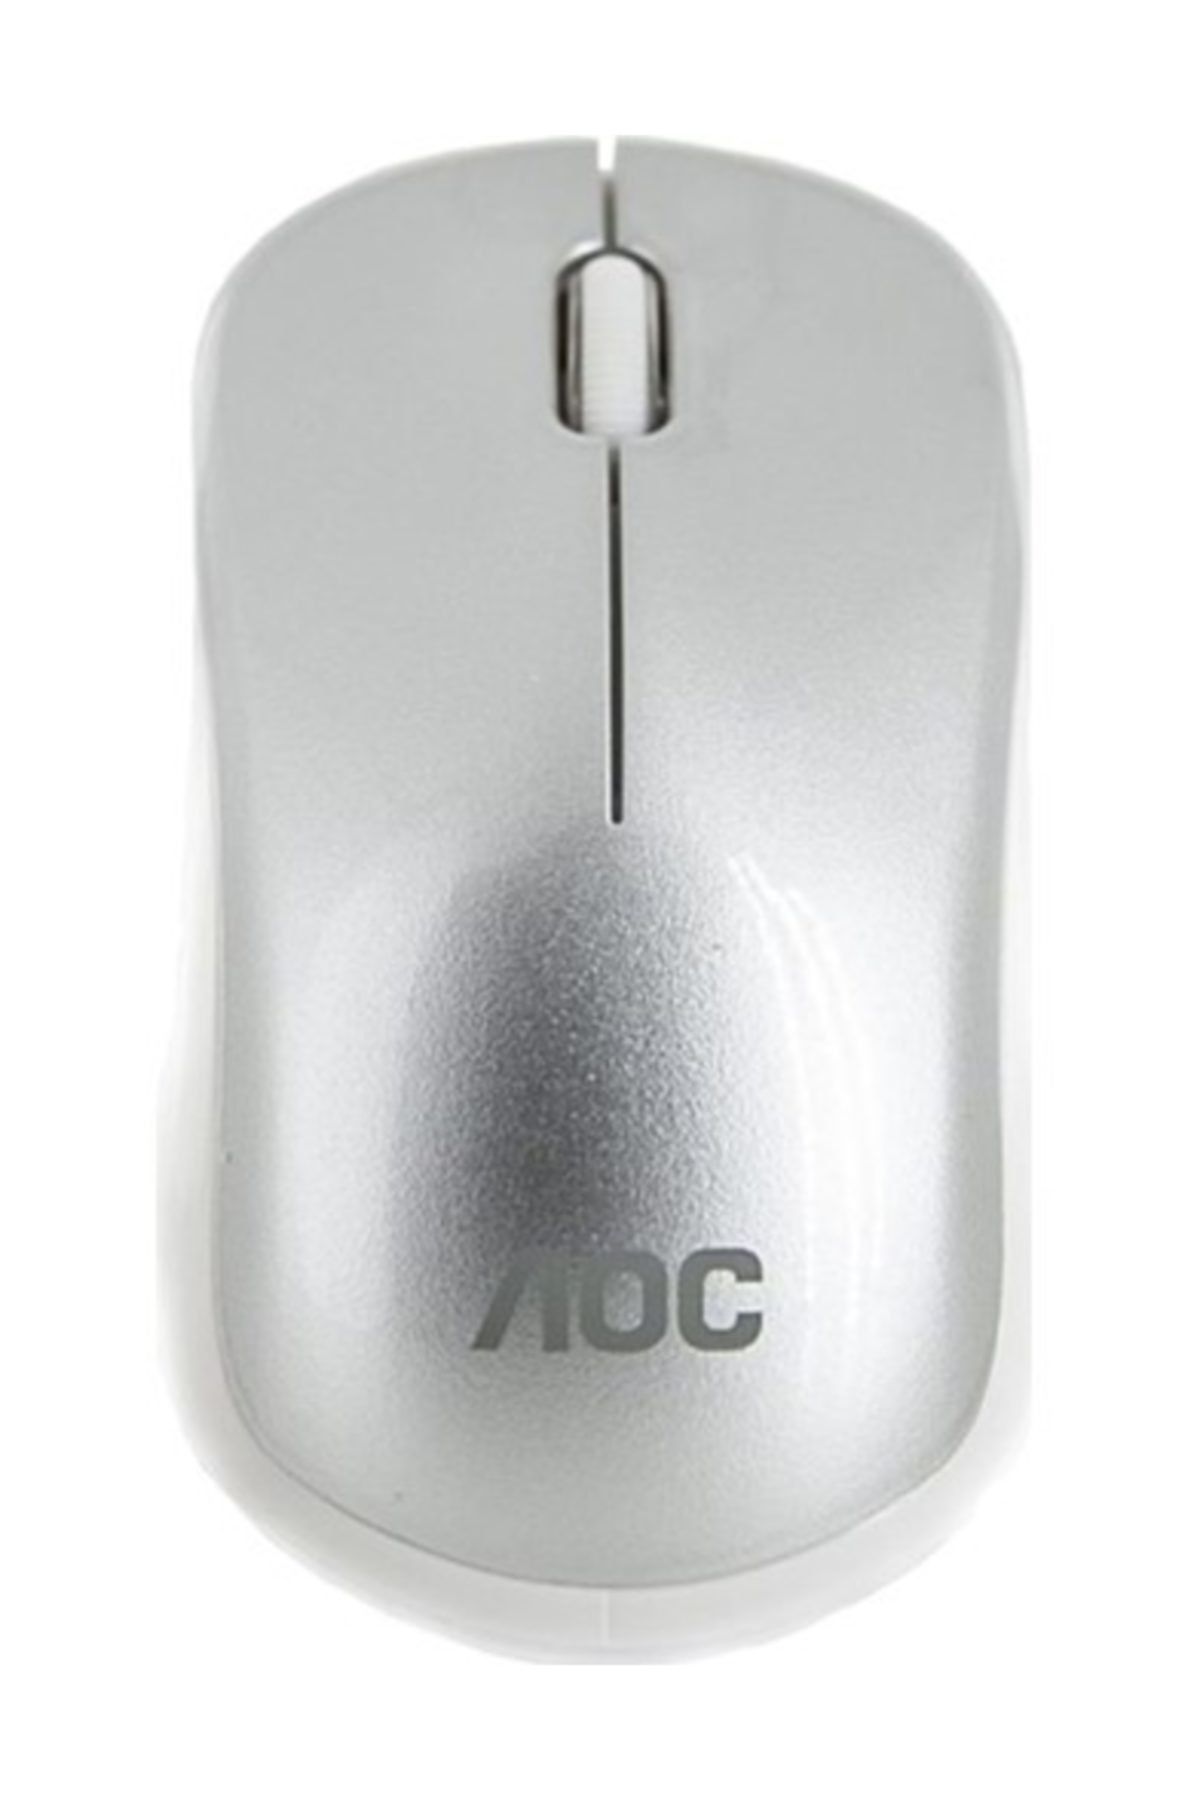 Genel Markalar Lrt-saywin Aoc Wm936s Kablosuz Wireless Mouse 2000dpi Beyaz Wm-936/s